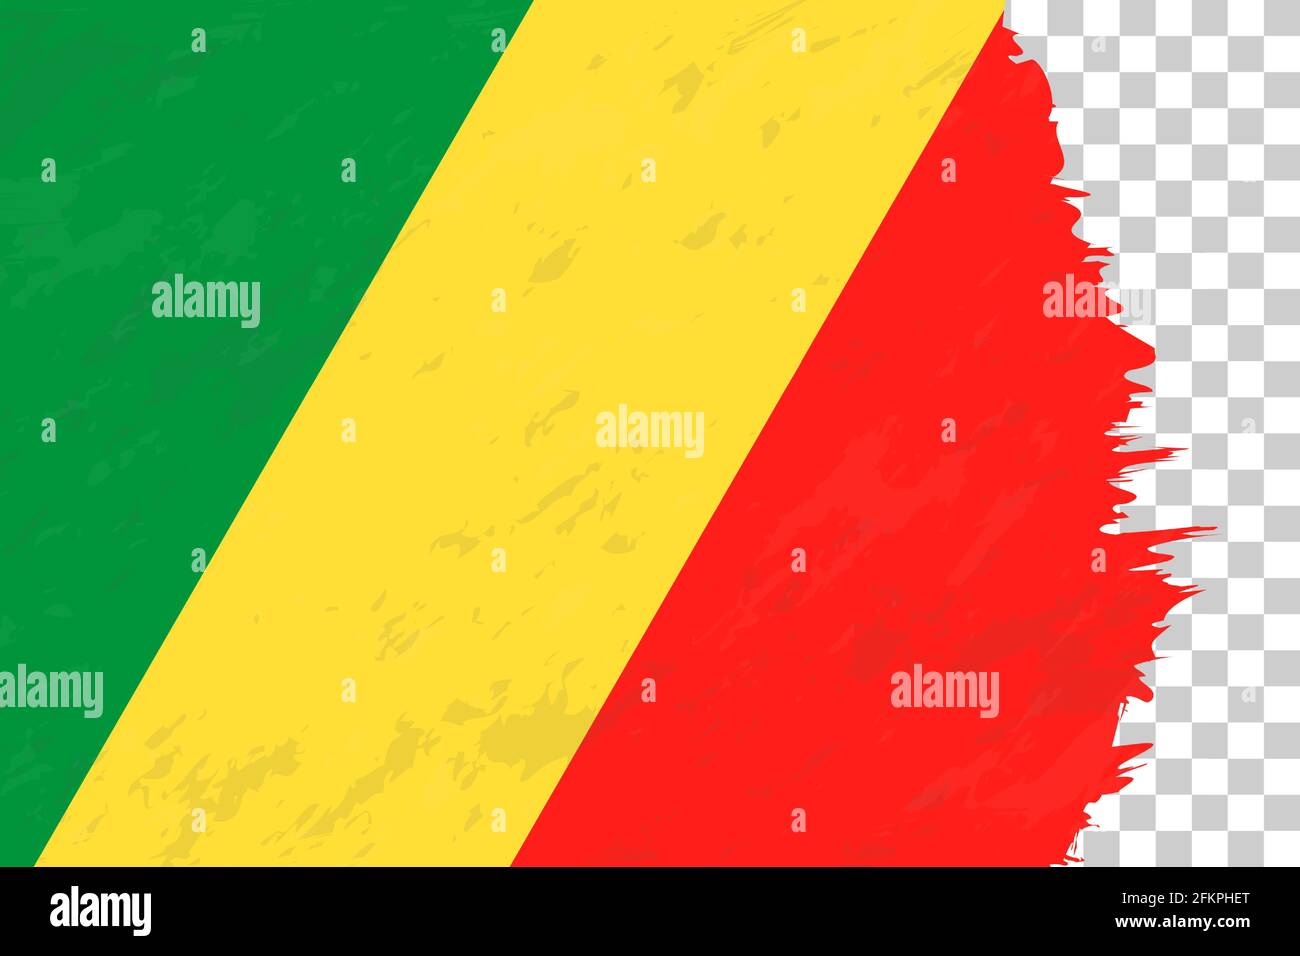 Résumé horizontal Grunge Brushed drapeau du Congo sur la grille transparente. Modèle vectoriel. Illustration de Vecteur